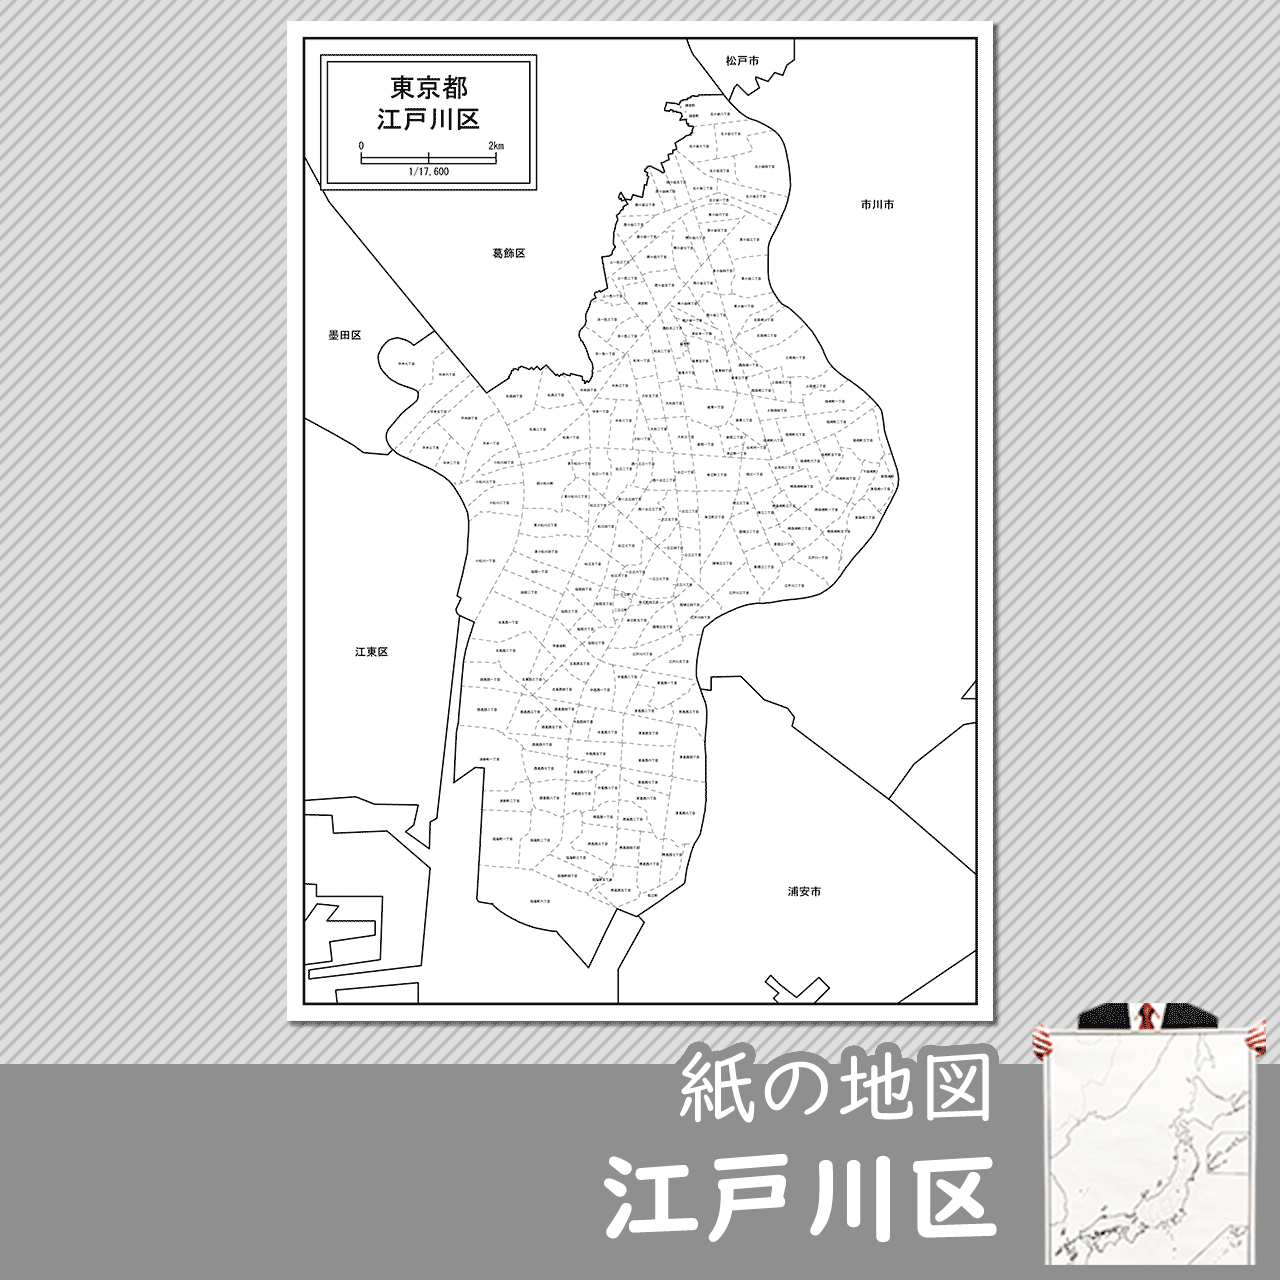 東京都江戸川区の紙の白地図のサムネイル